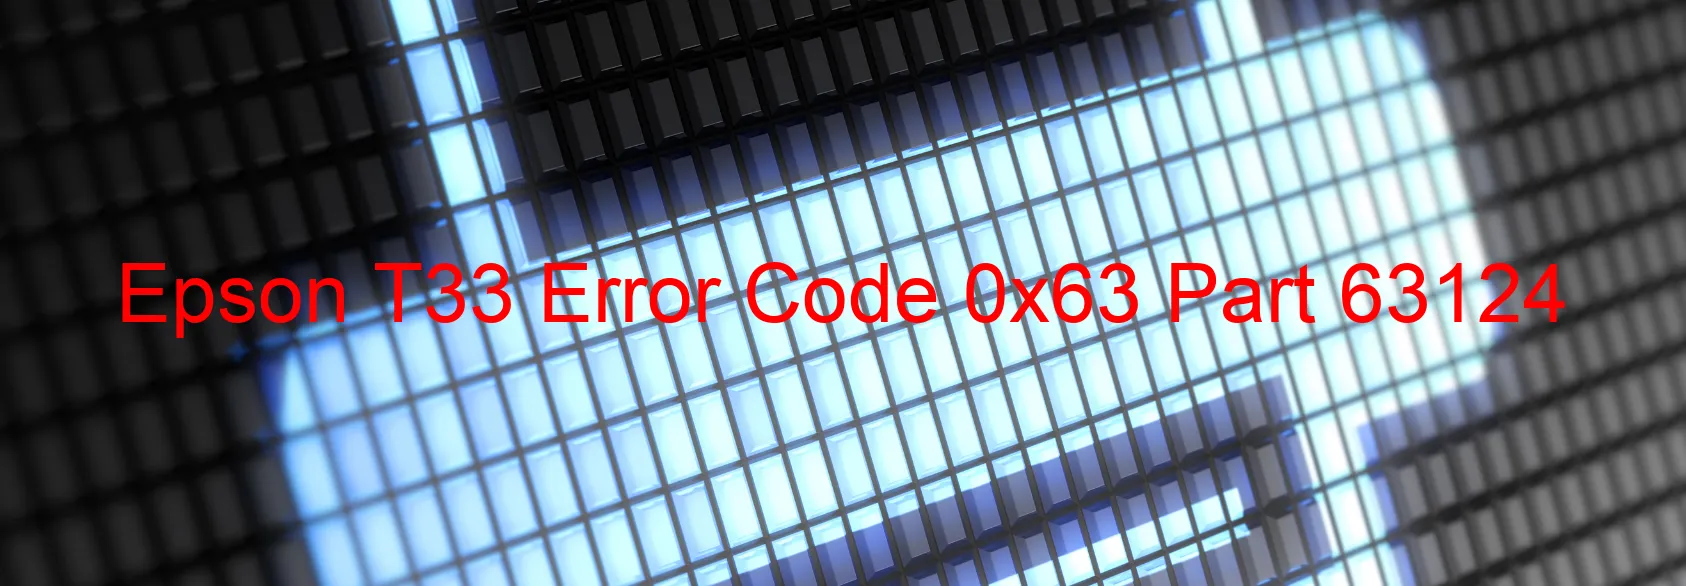 Epson T33 Error Code 0x63 Part 63124